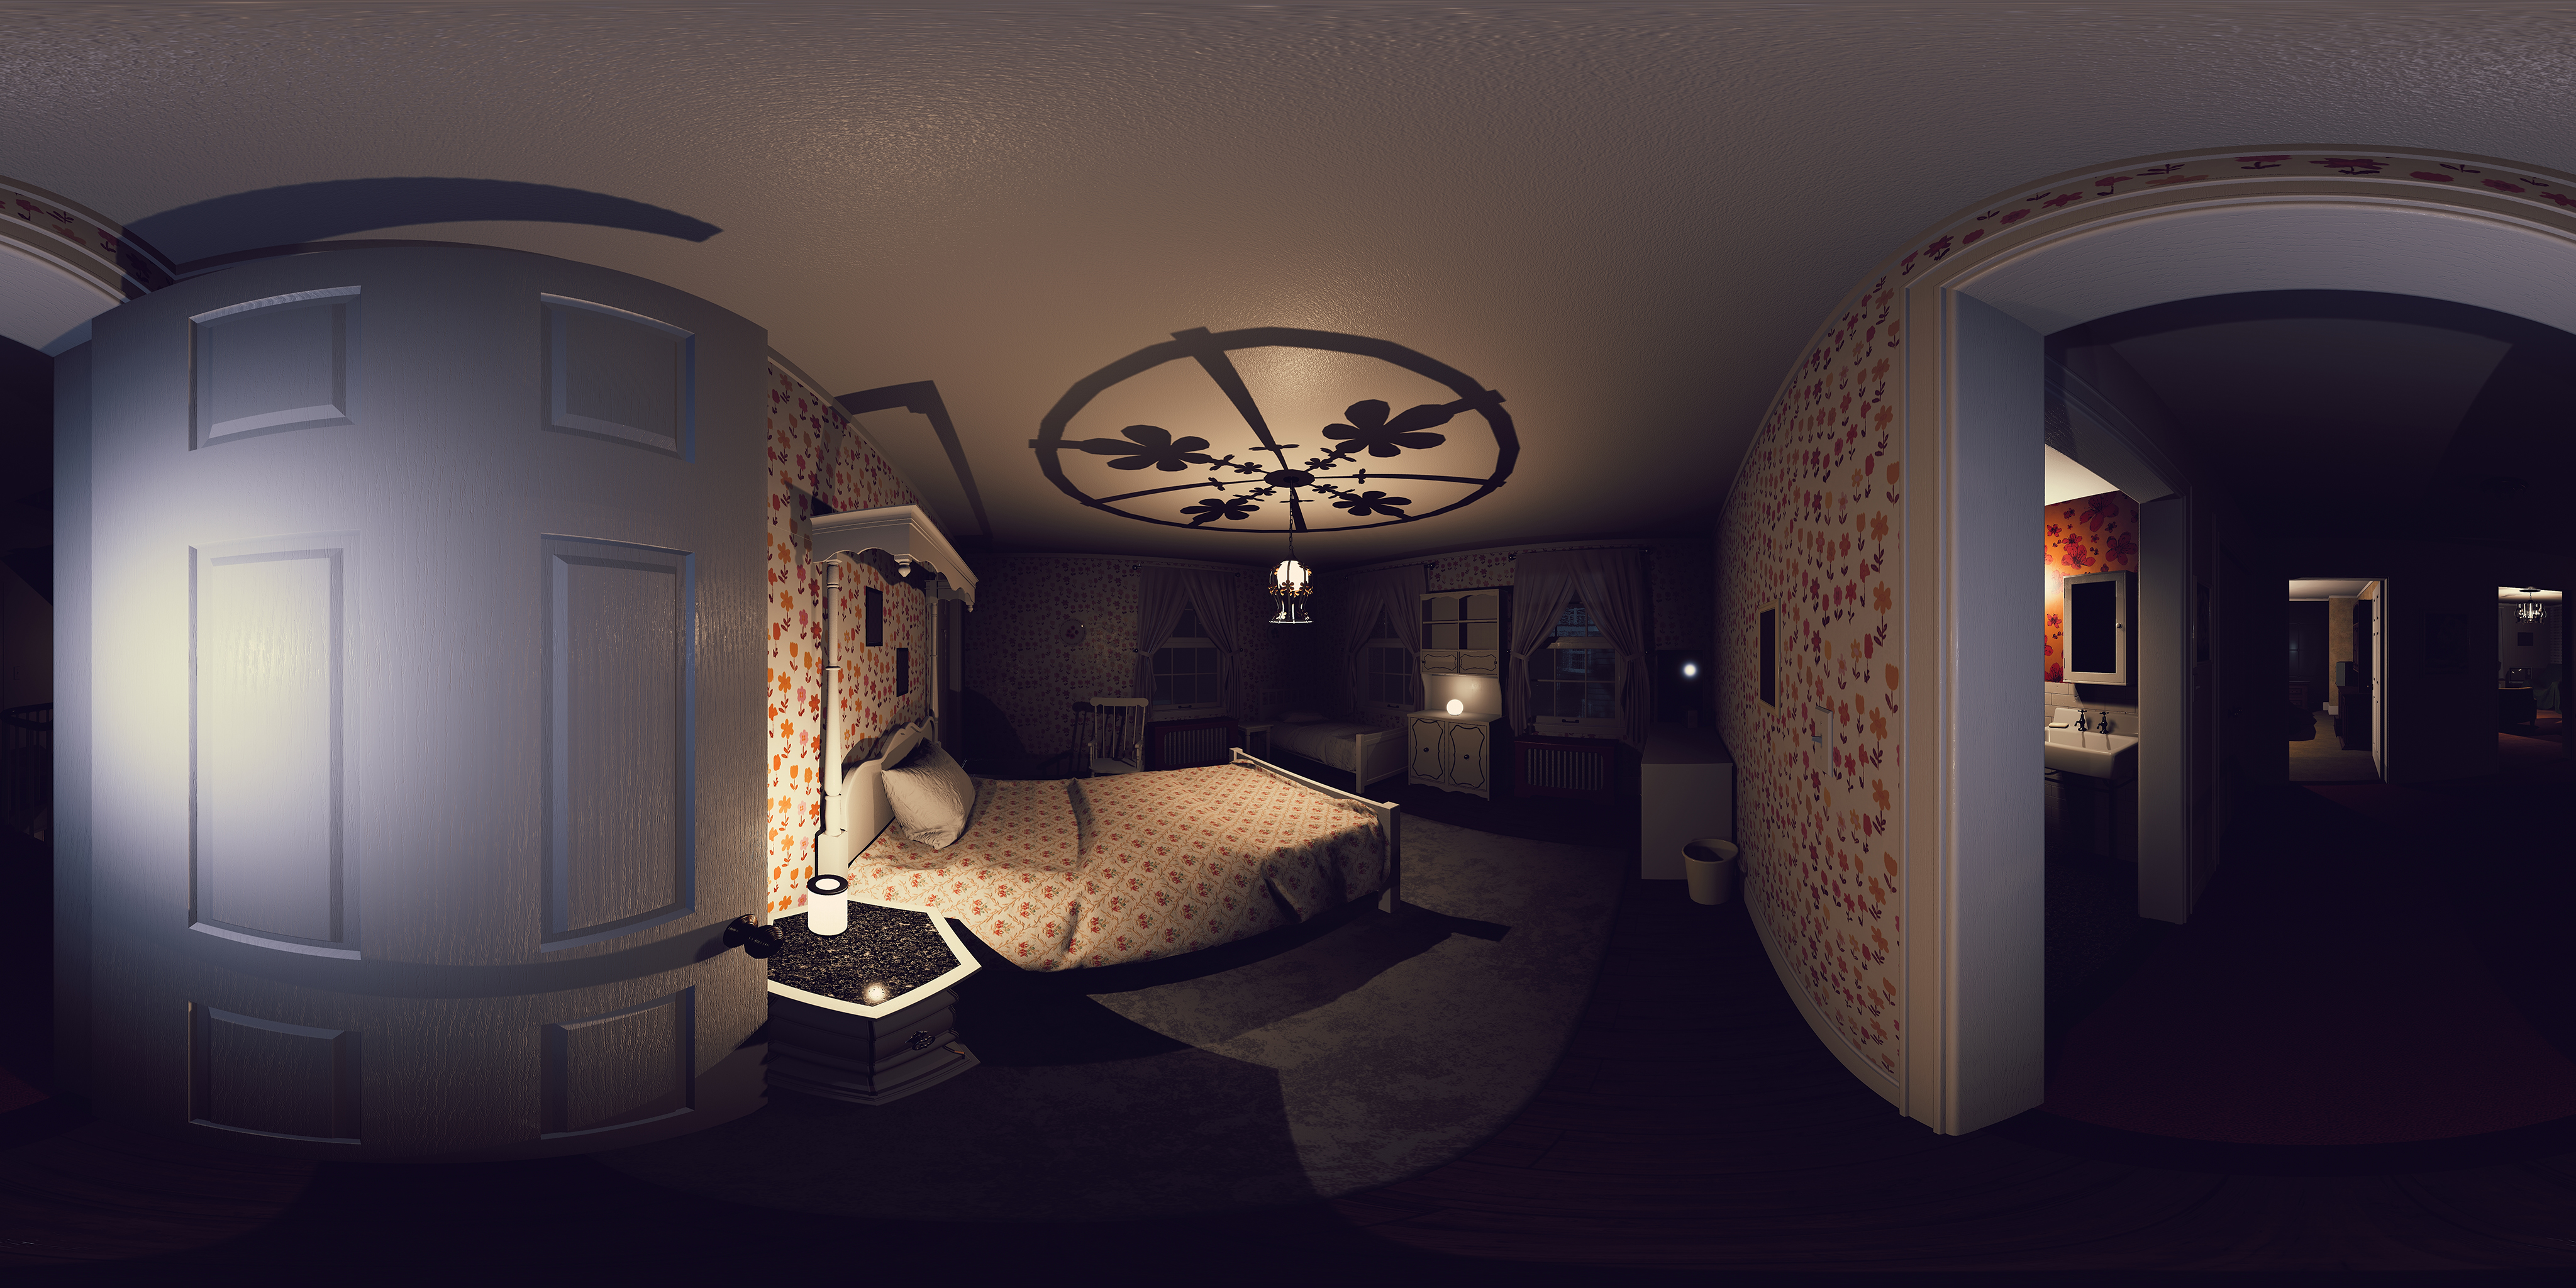 Соседная комната. 360 HDRI Panorama комната. HDRI карта тёмная. HDR комната. Квартира 360 градусов.